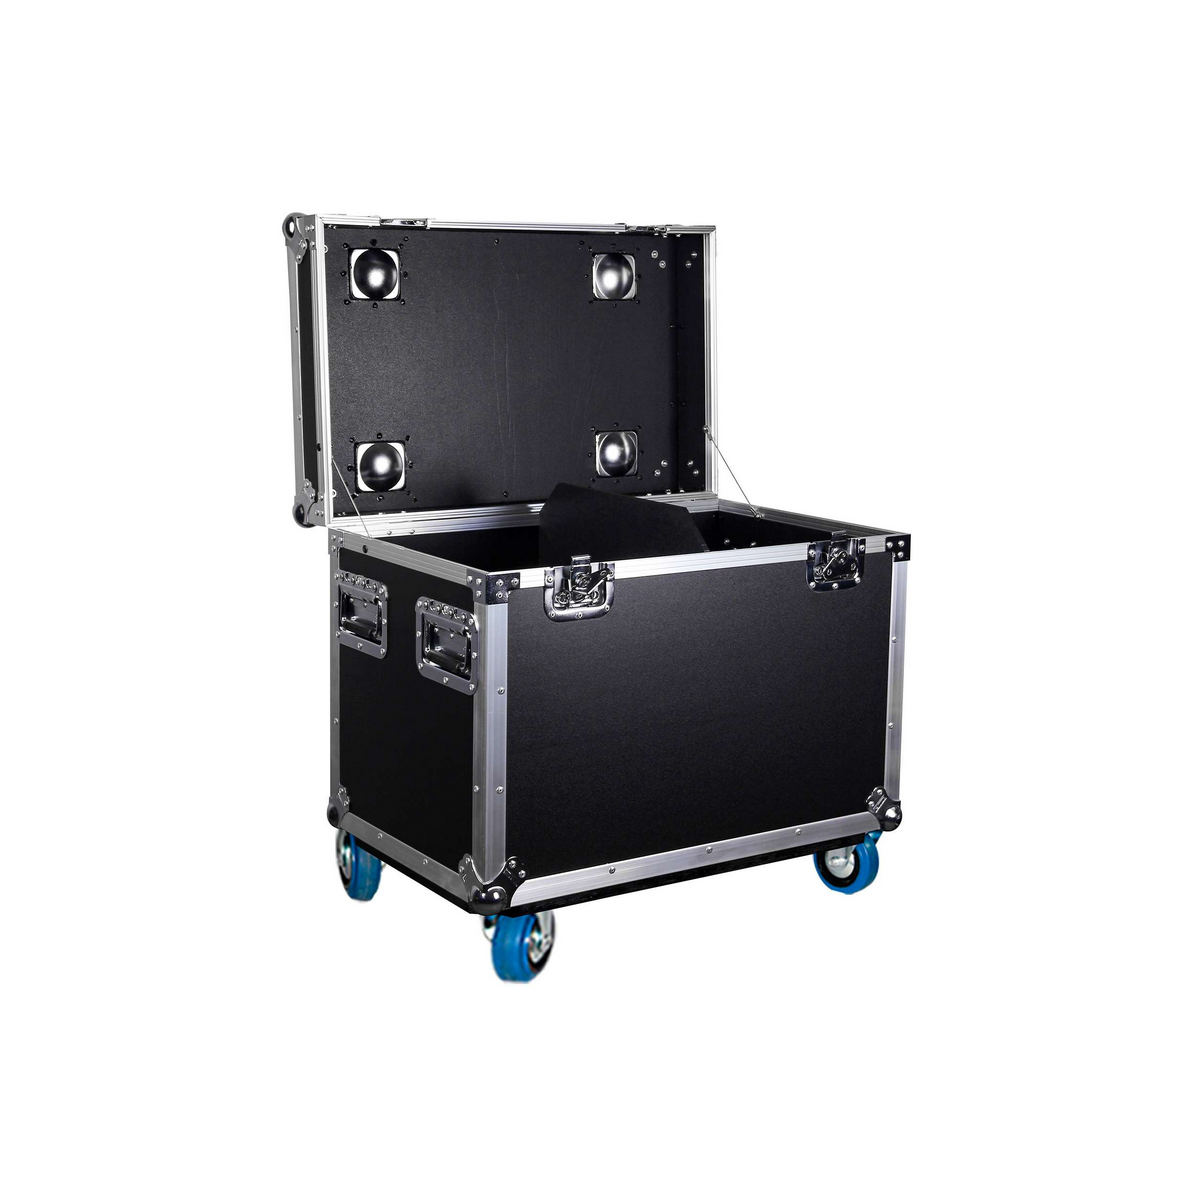 Flight cases utilitaires - Power Acoustics - Flight cases - FT CASE T300